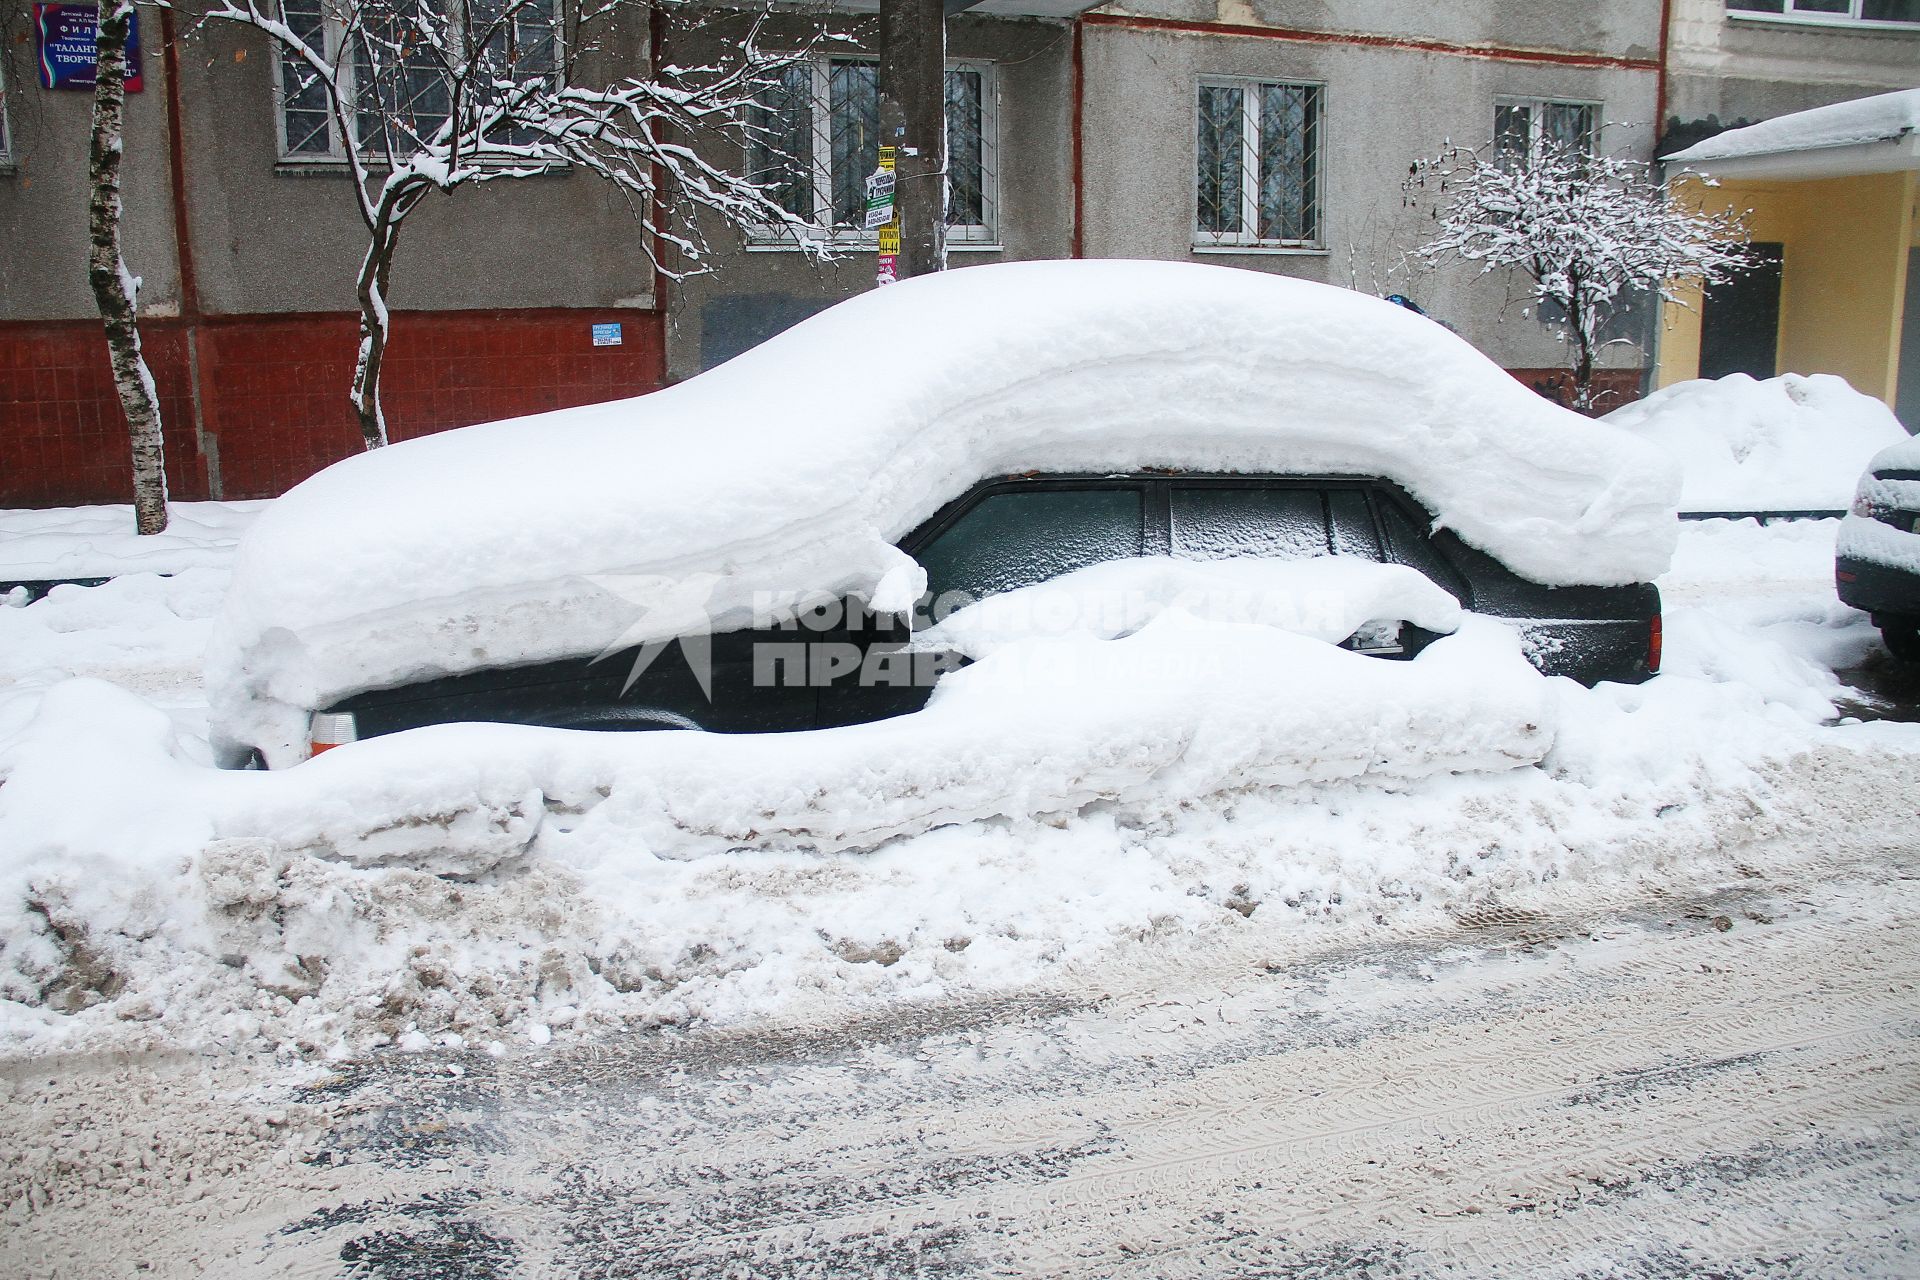 Нижний Новгород. Заснеженный автомобиль во дворе жилого дома.